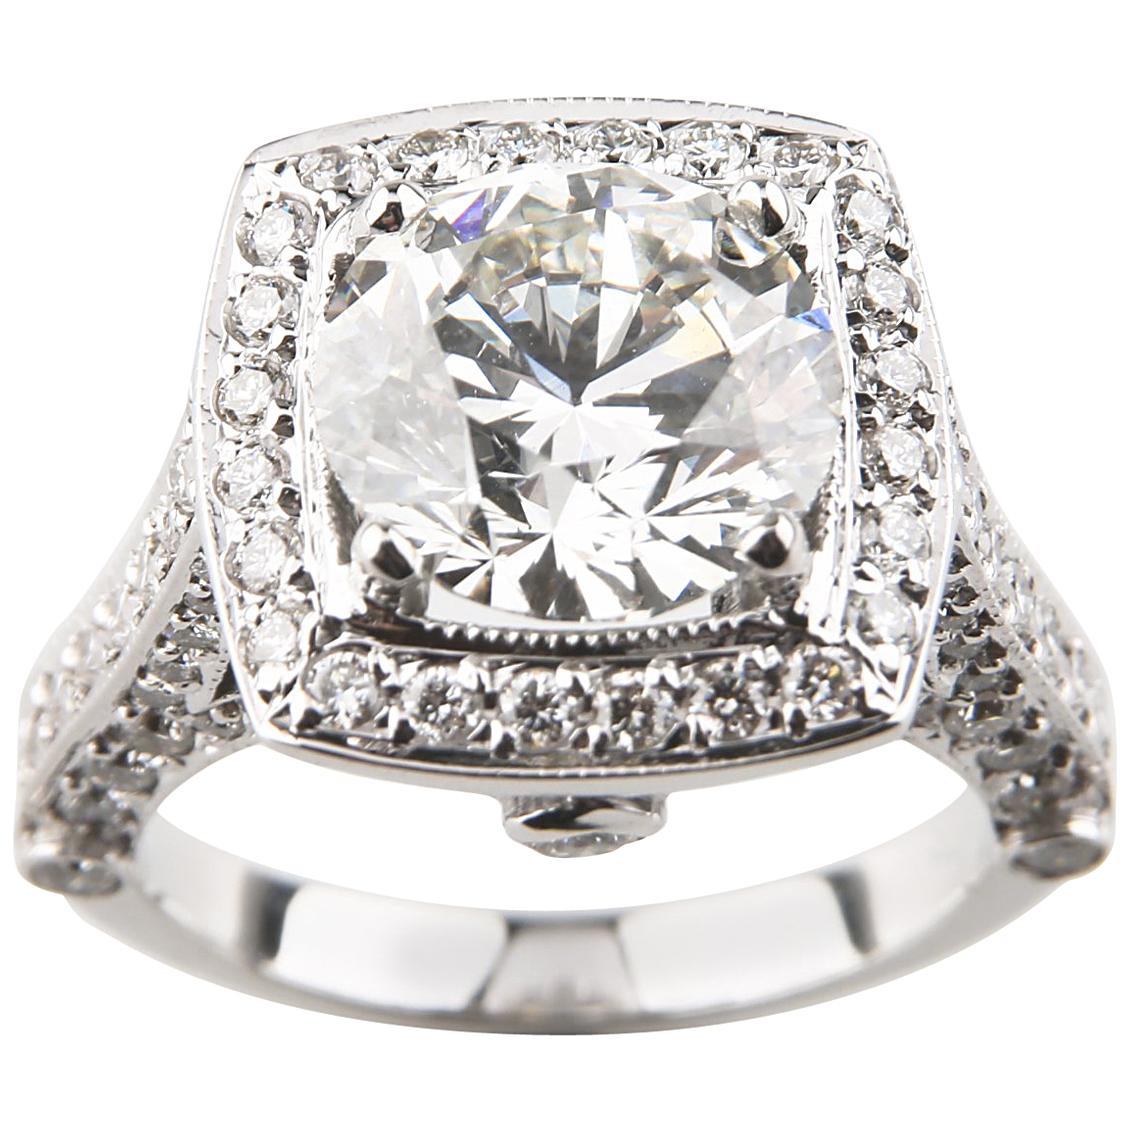 3.05 Carat Round Brilliant Diamond 14 Karat Gold Engagement Ring GIA Certified